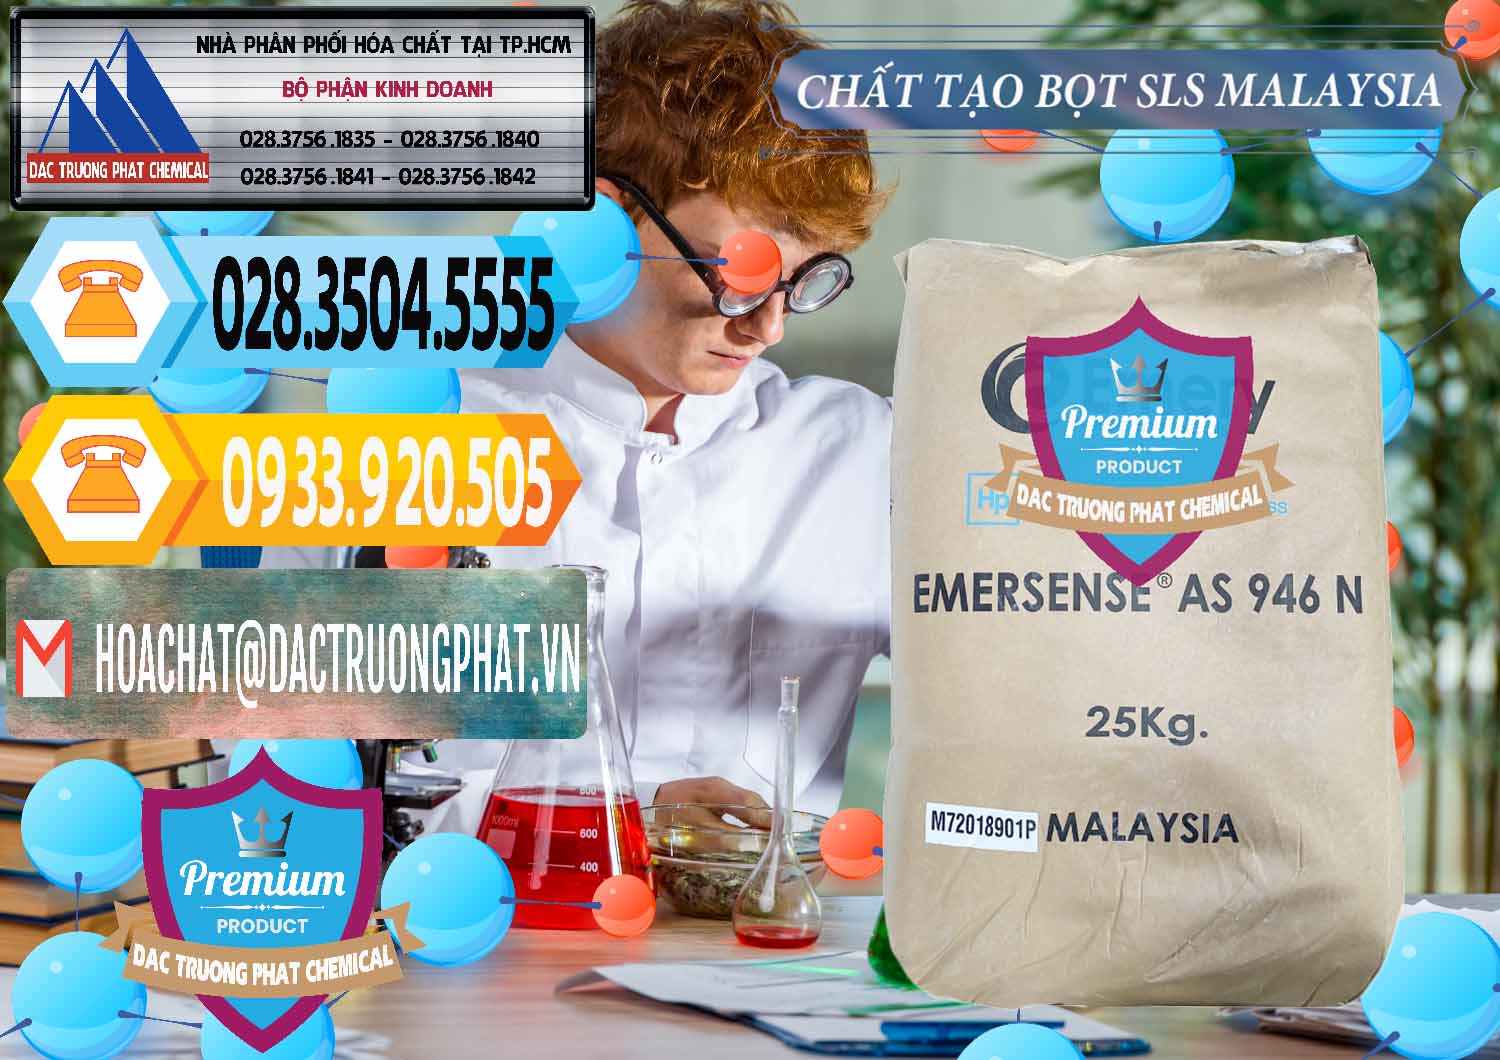 Cung cấp ( bán ) Chất Tạo Bọt SLS Emery - Emersense AS 946N Mã Lai Malaysia - 0423 - Chuyên nhập khẩu - phân phối hóa chất tại TP.HCM - hoachattayrua.net